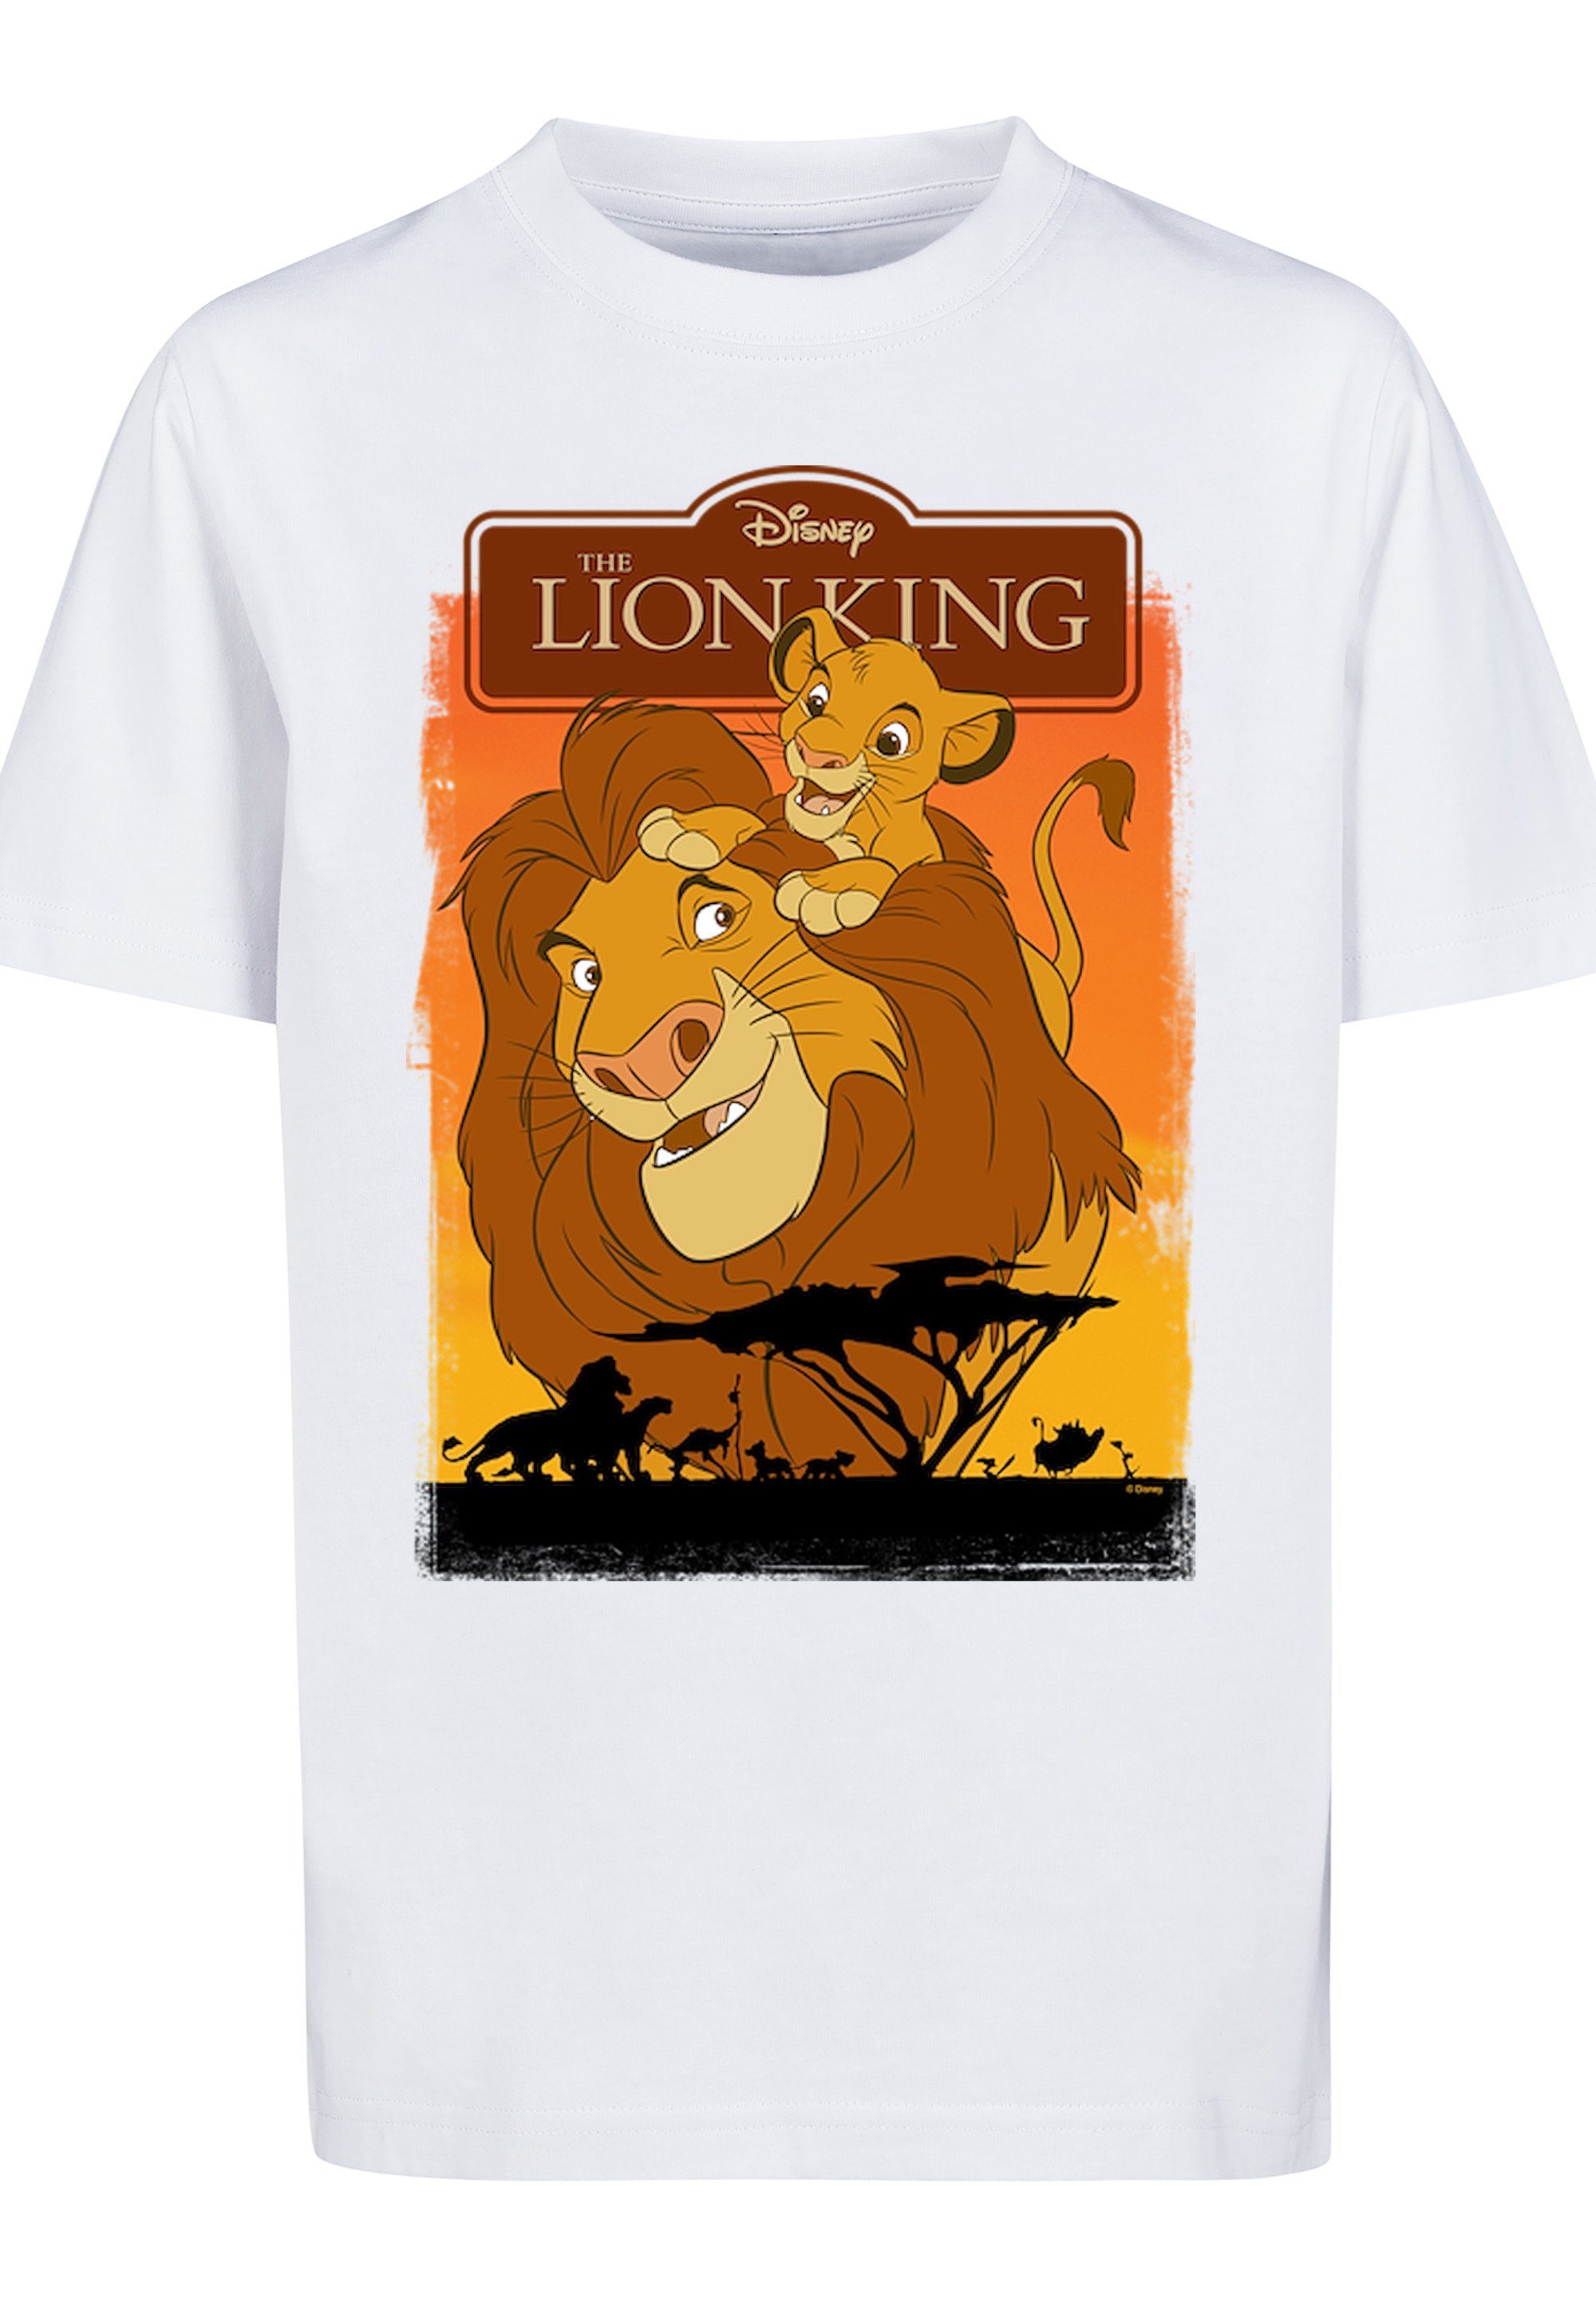 F4NT4STIC der Schnitt König rundum und Löwen zum Mufasa Bequemer Simba wohlfühlen T-Shirt Print,